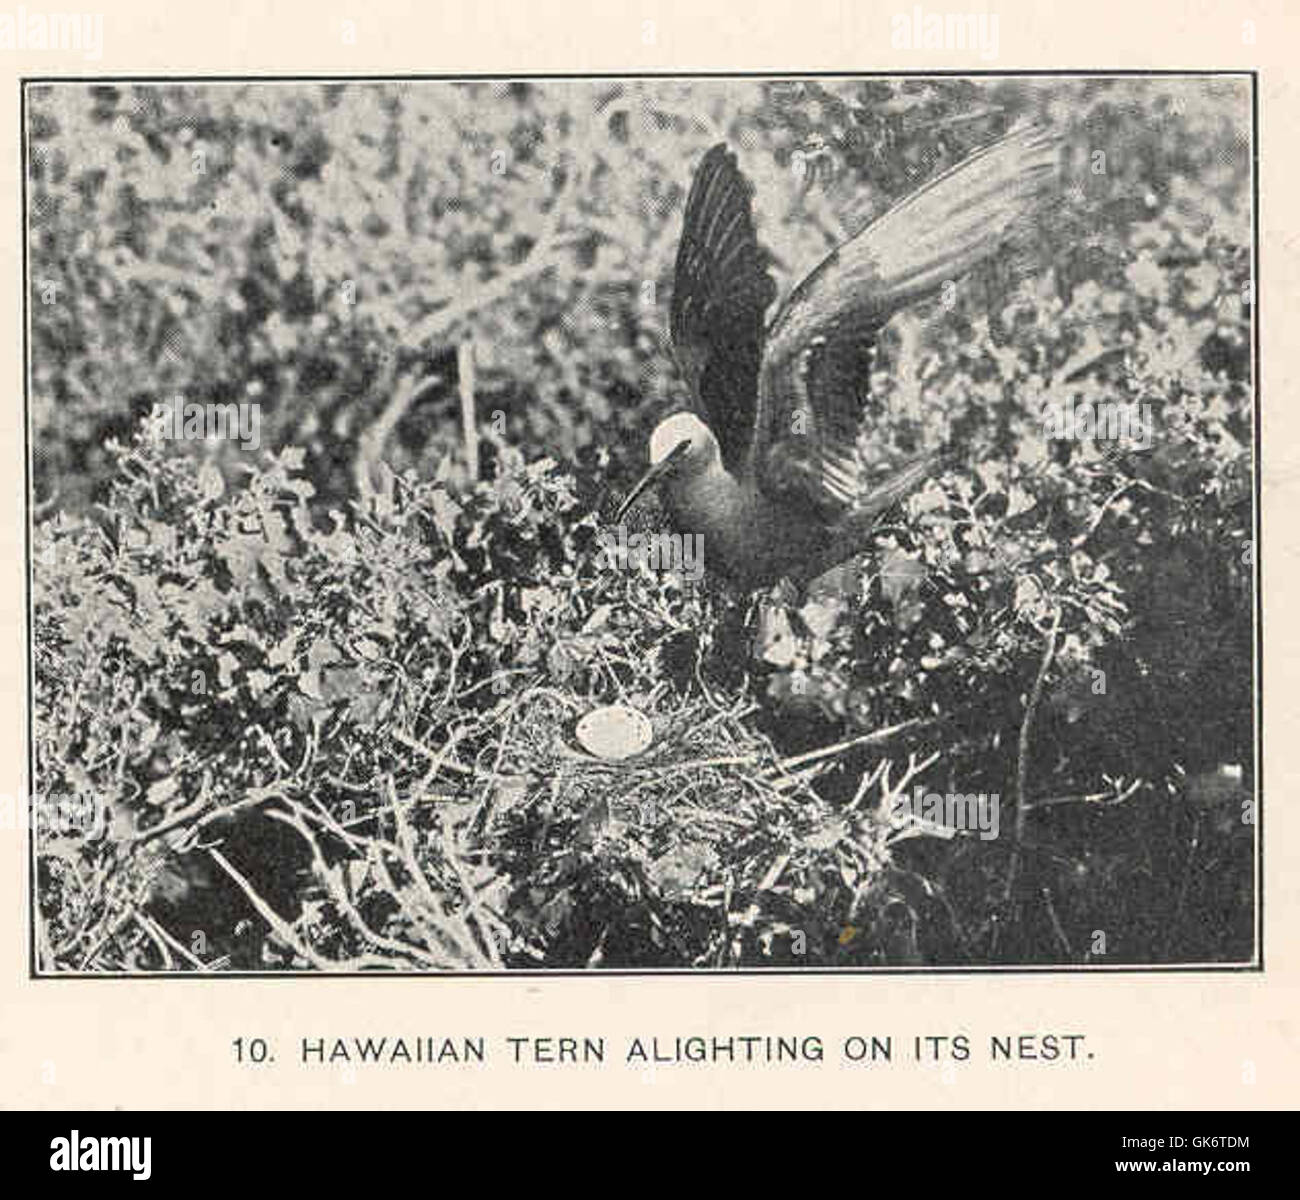 42774 Hawaiian Tern Alighting on its nest Stock Photo